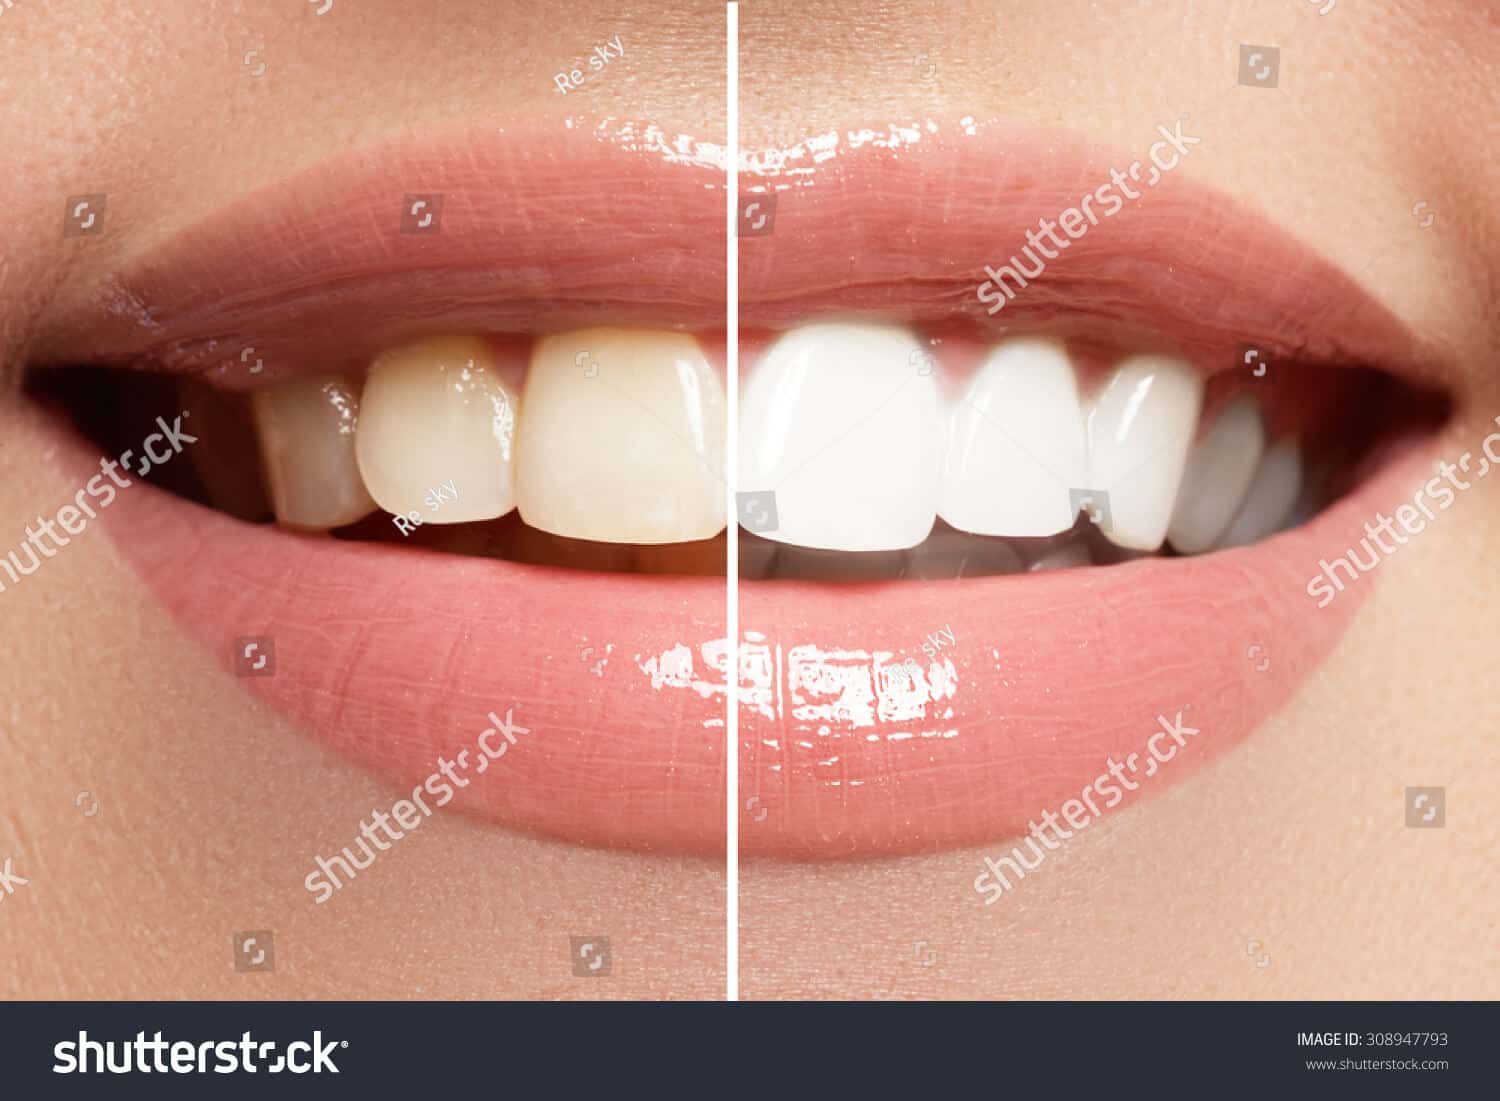 1 triệu 700 ngàn hình ảnh răng chất lượng cao trên Shutterstock